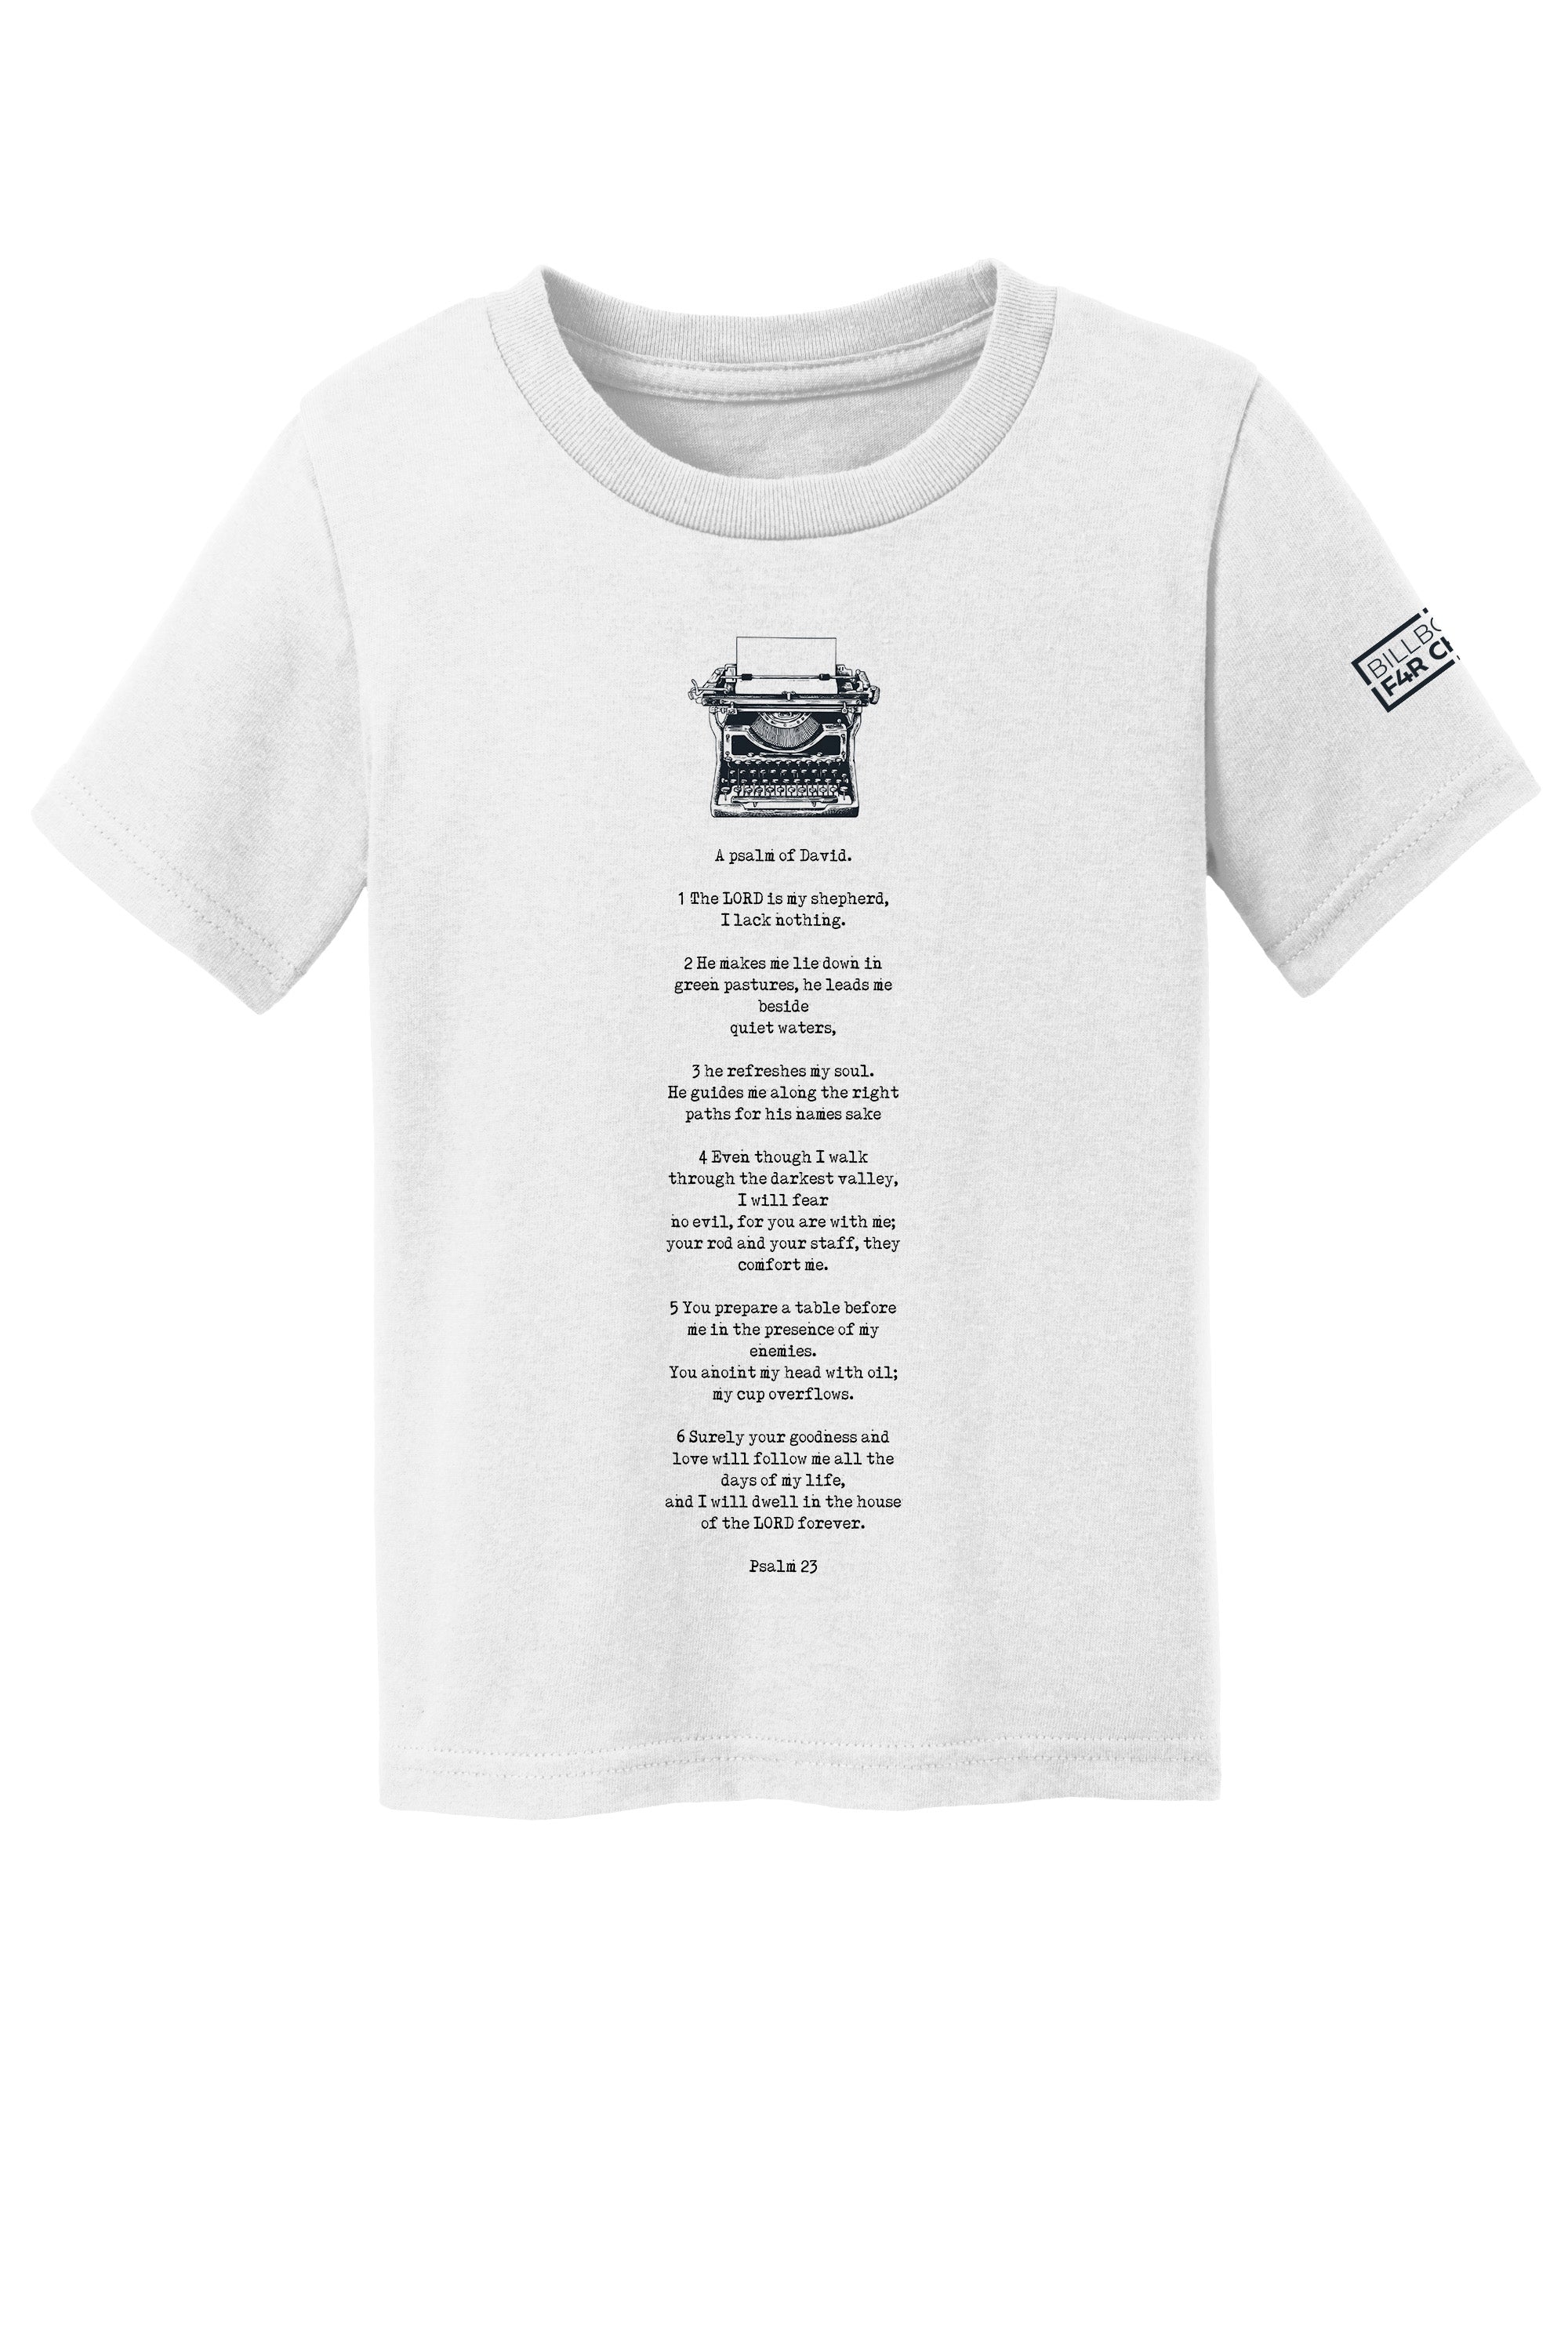 Psalm 23 Toddler T-Shirt